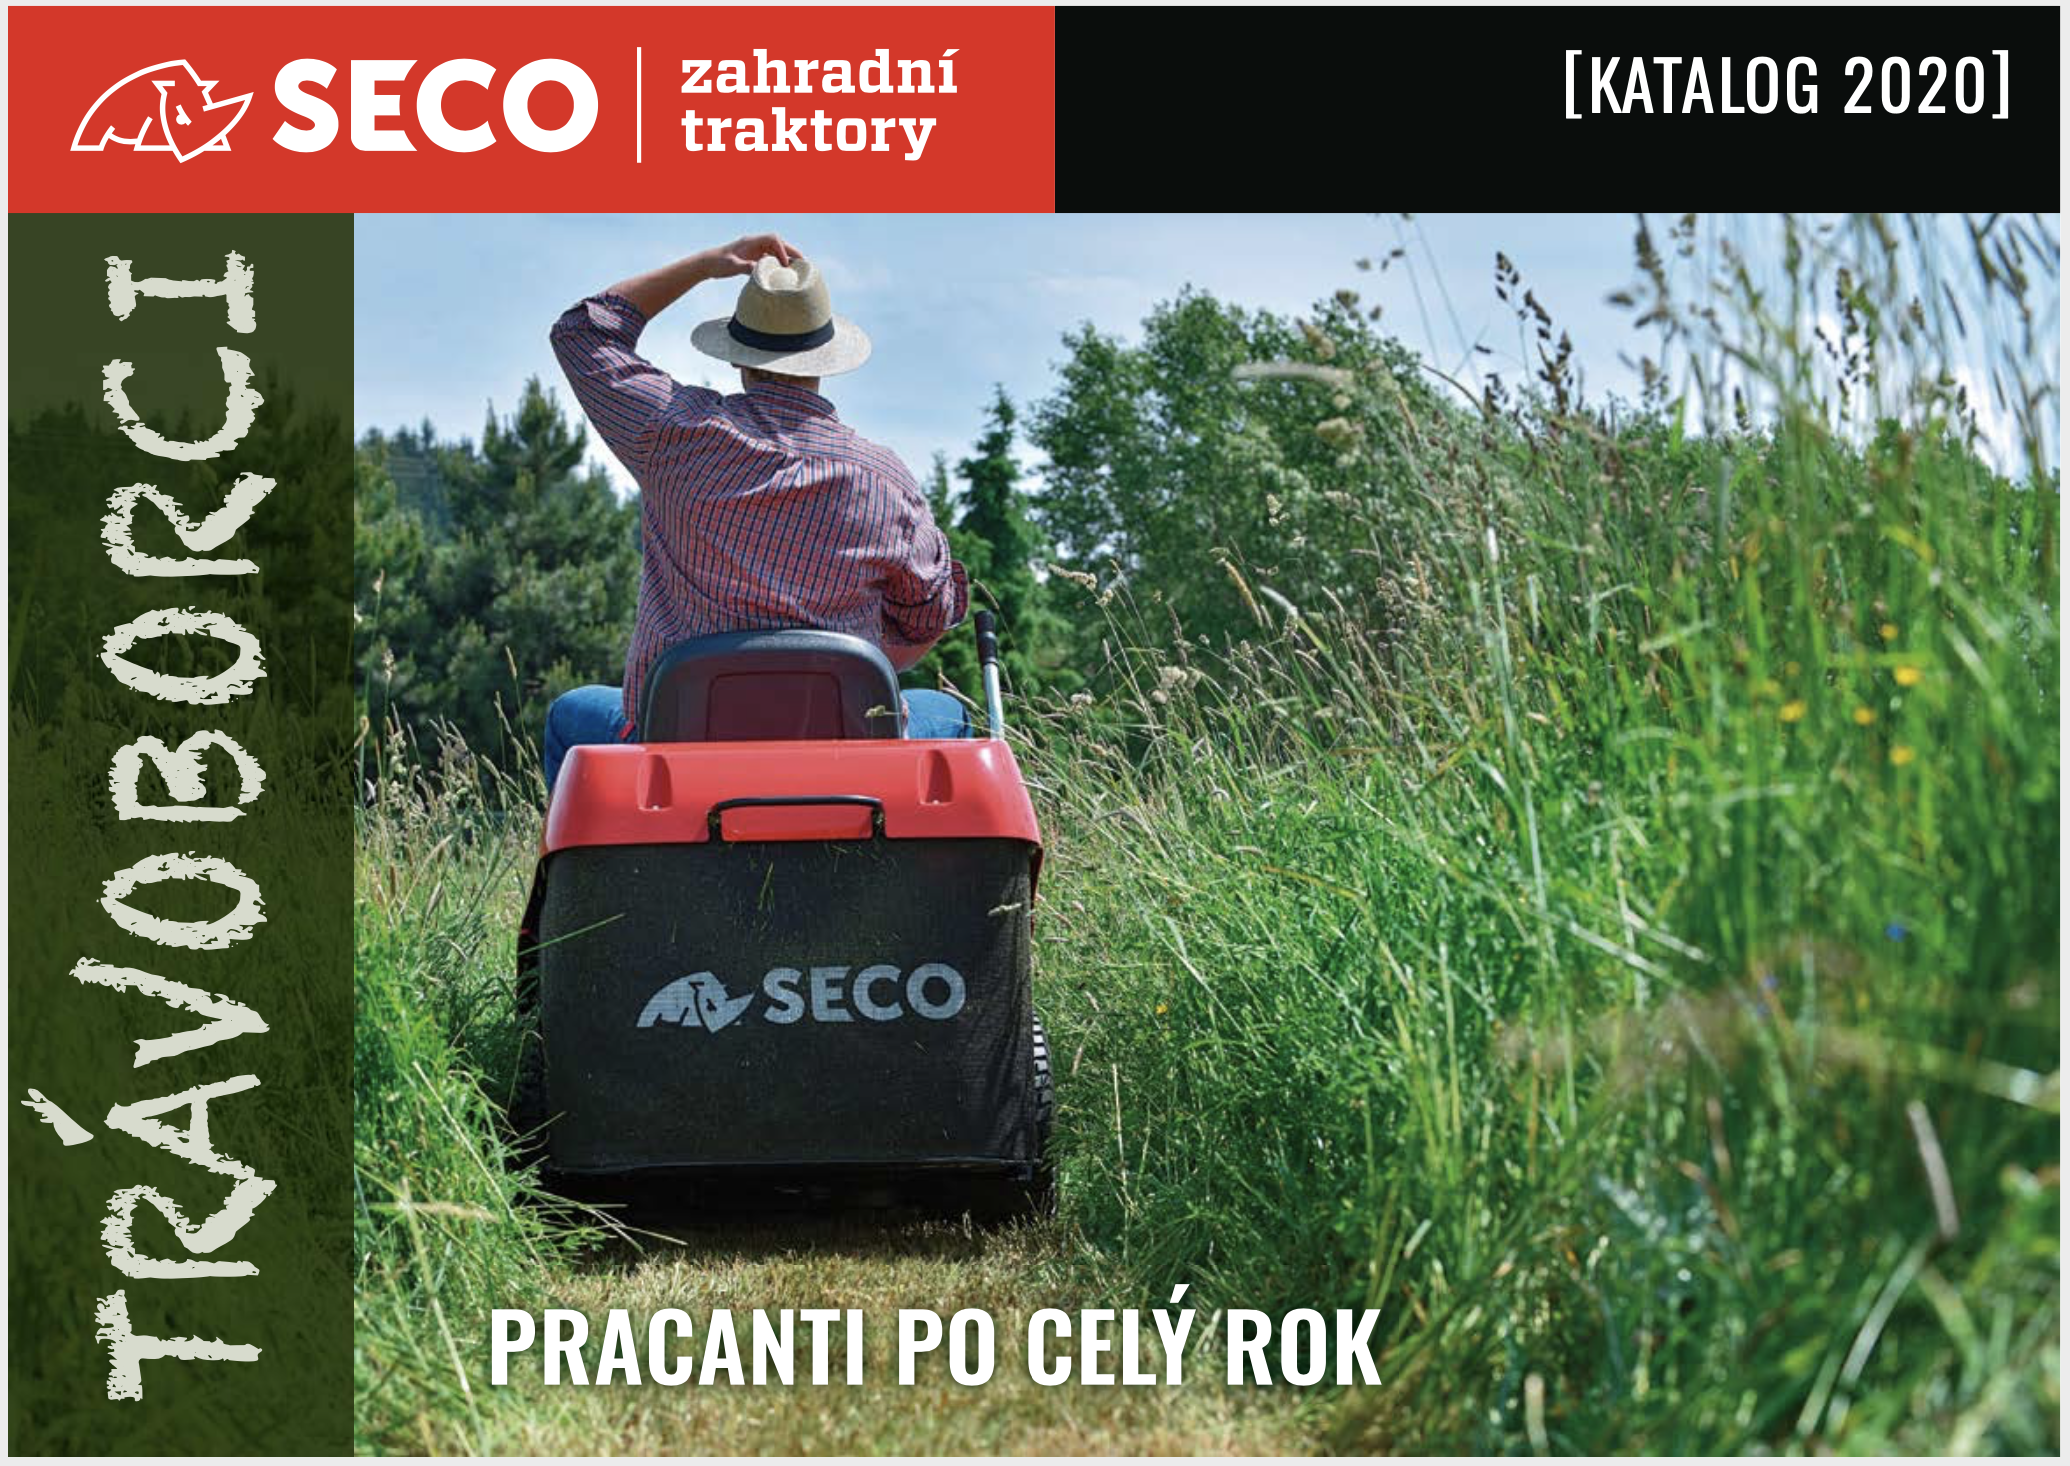 Katalog zahradní traktory Seco Industries